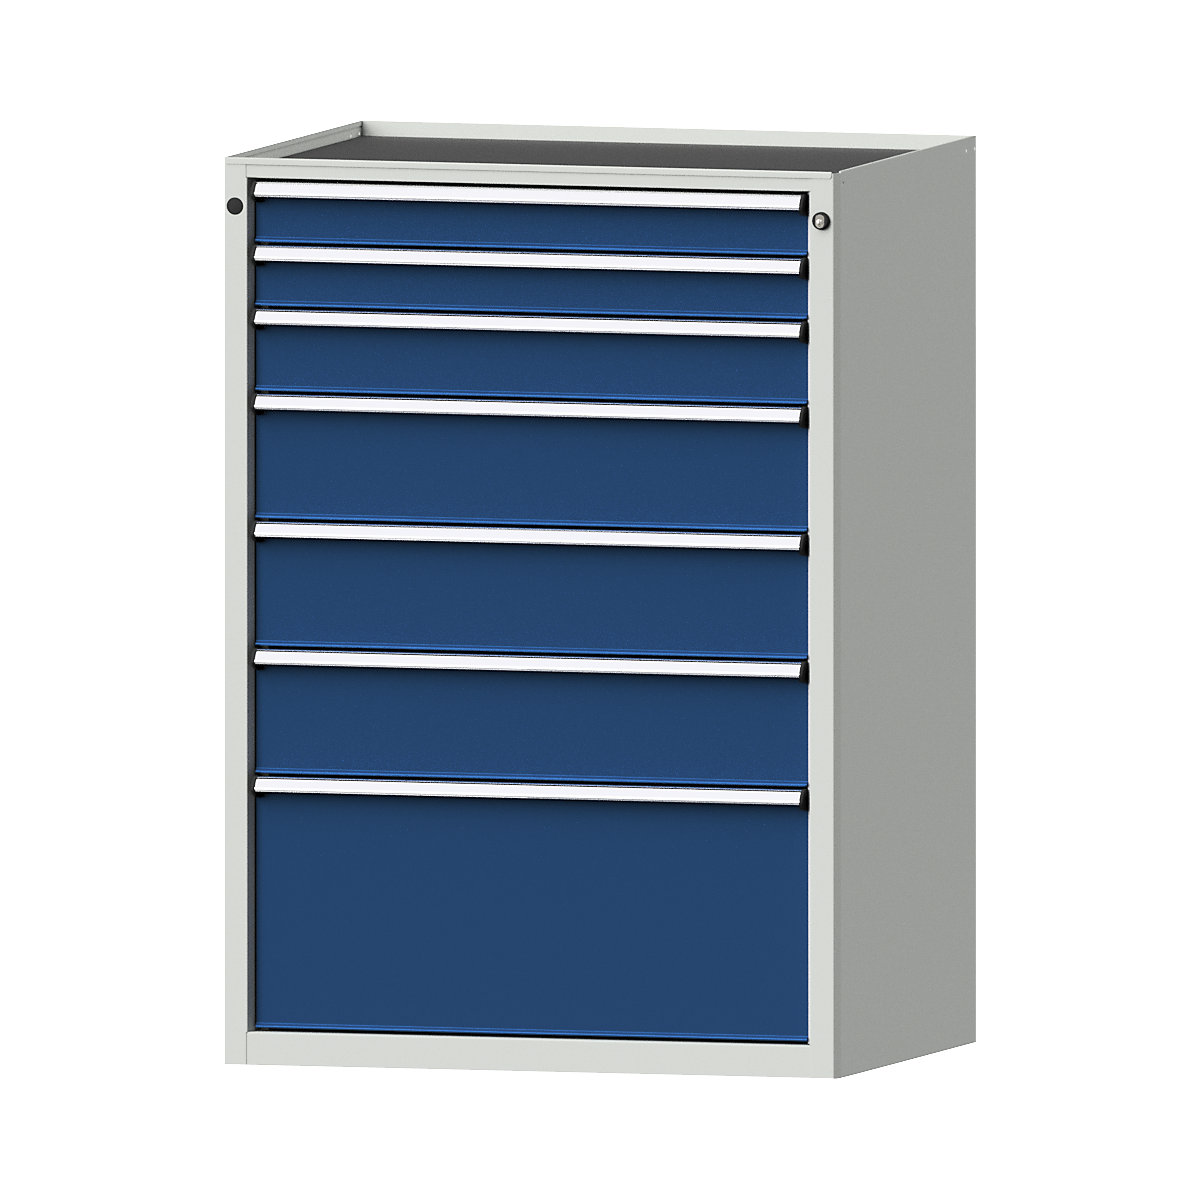 Szafa z szufladami – ANKE, szer. x głęb. 910 x 675 mm, 7 szuflad, wys. 1280 mm, front niebieski gencjanowy-11